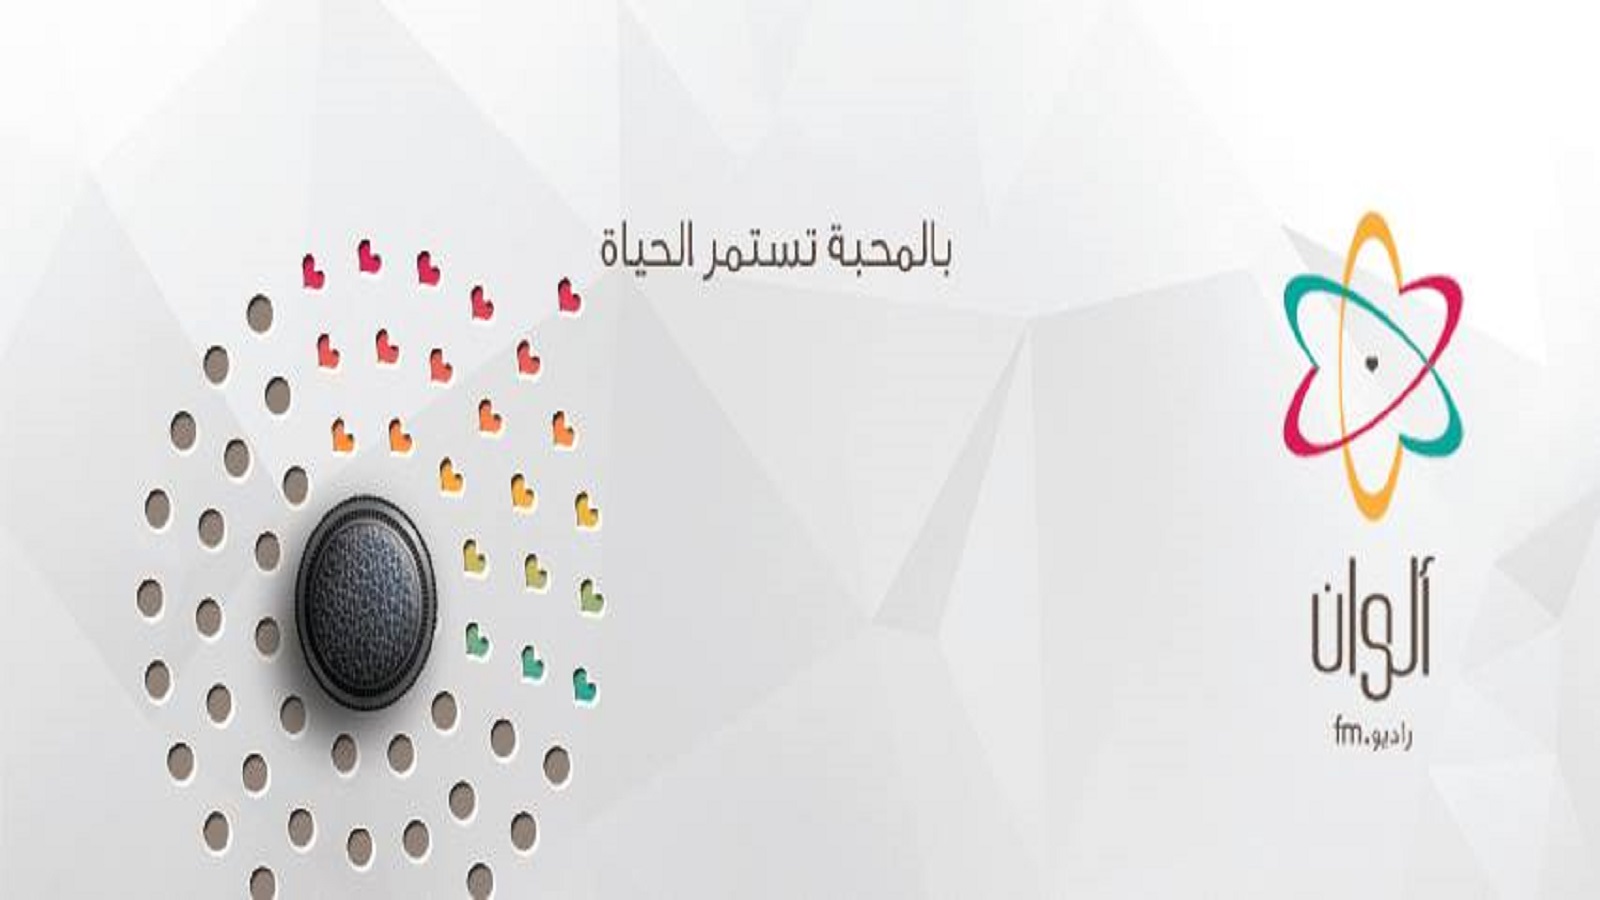 النصرة توقف بث راديو "ألوان" المعارض في إدلب